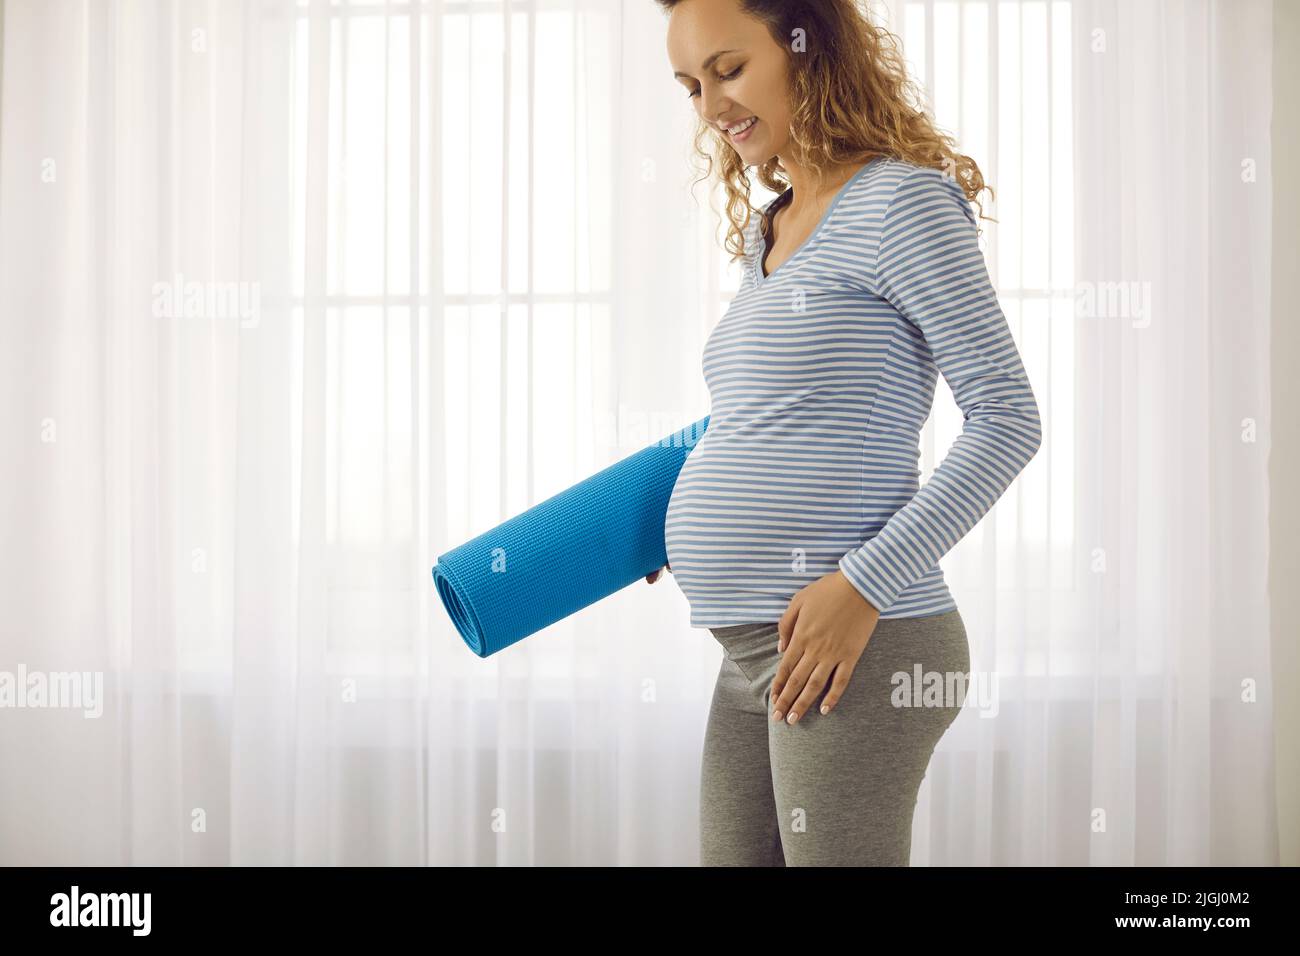 La femme enceinte suit un mode de vie sain pendant la grossesse Banque D'Images